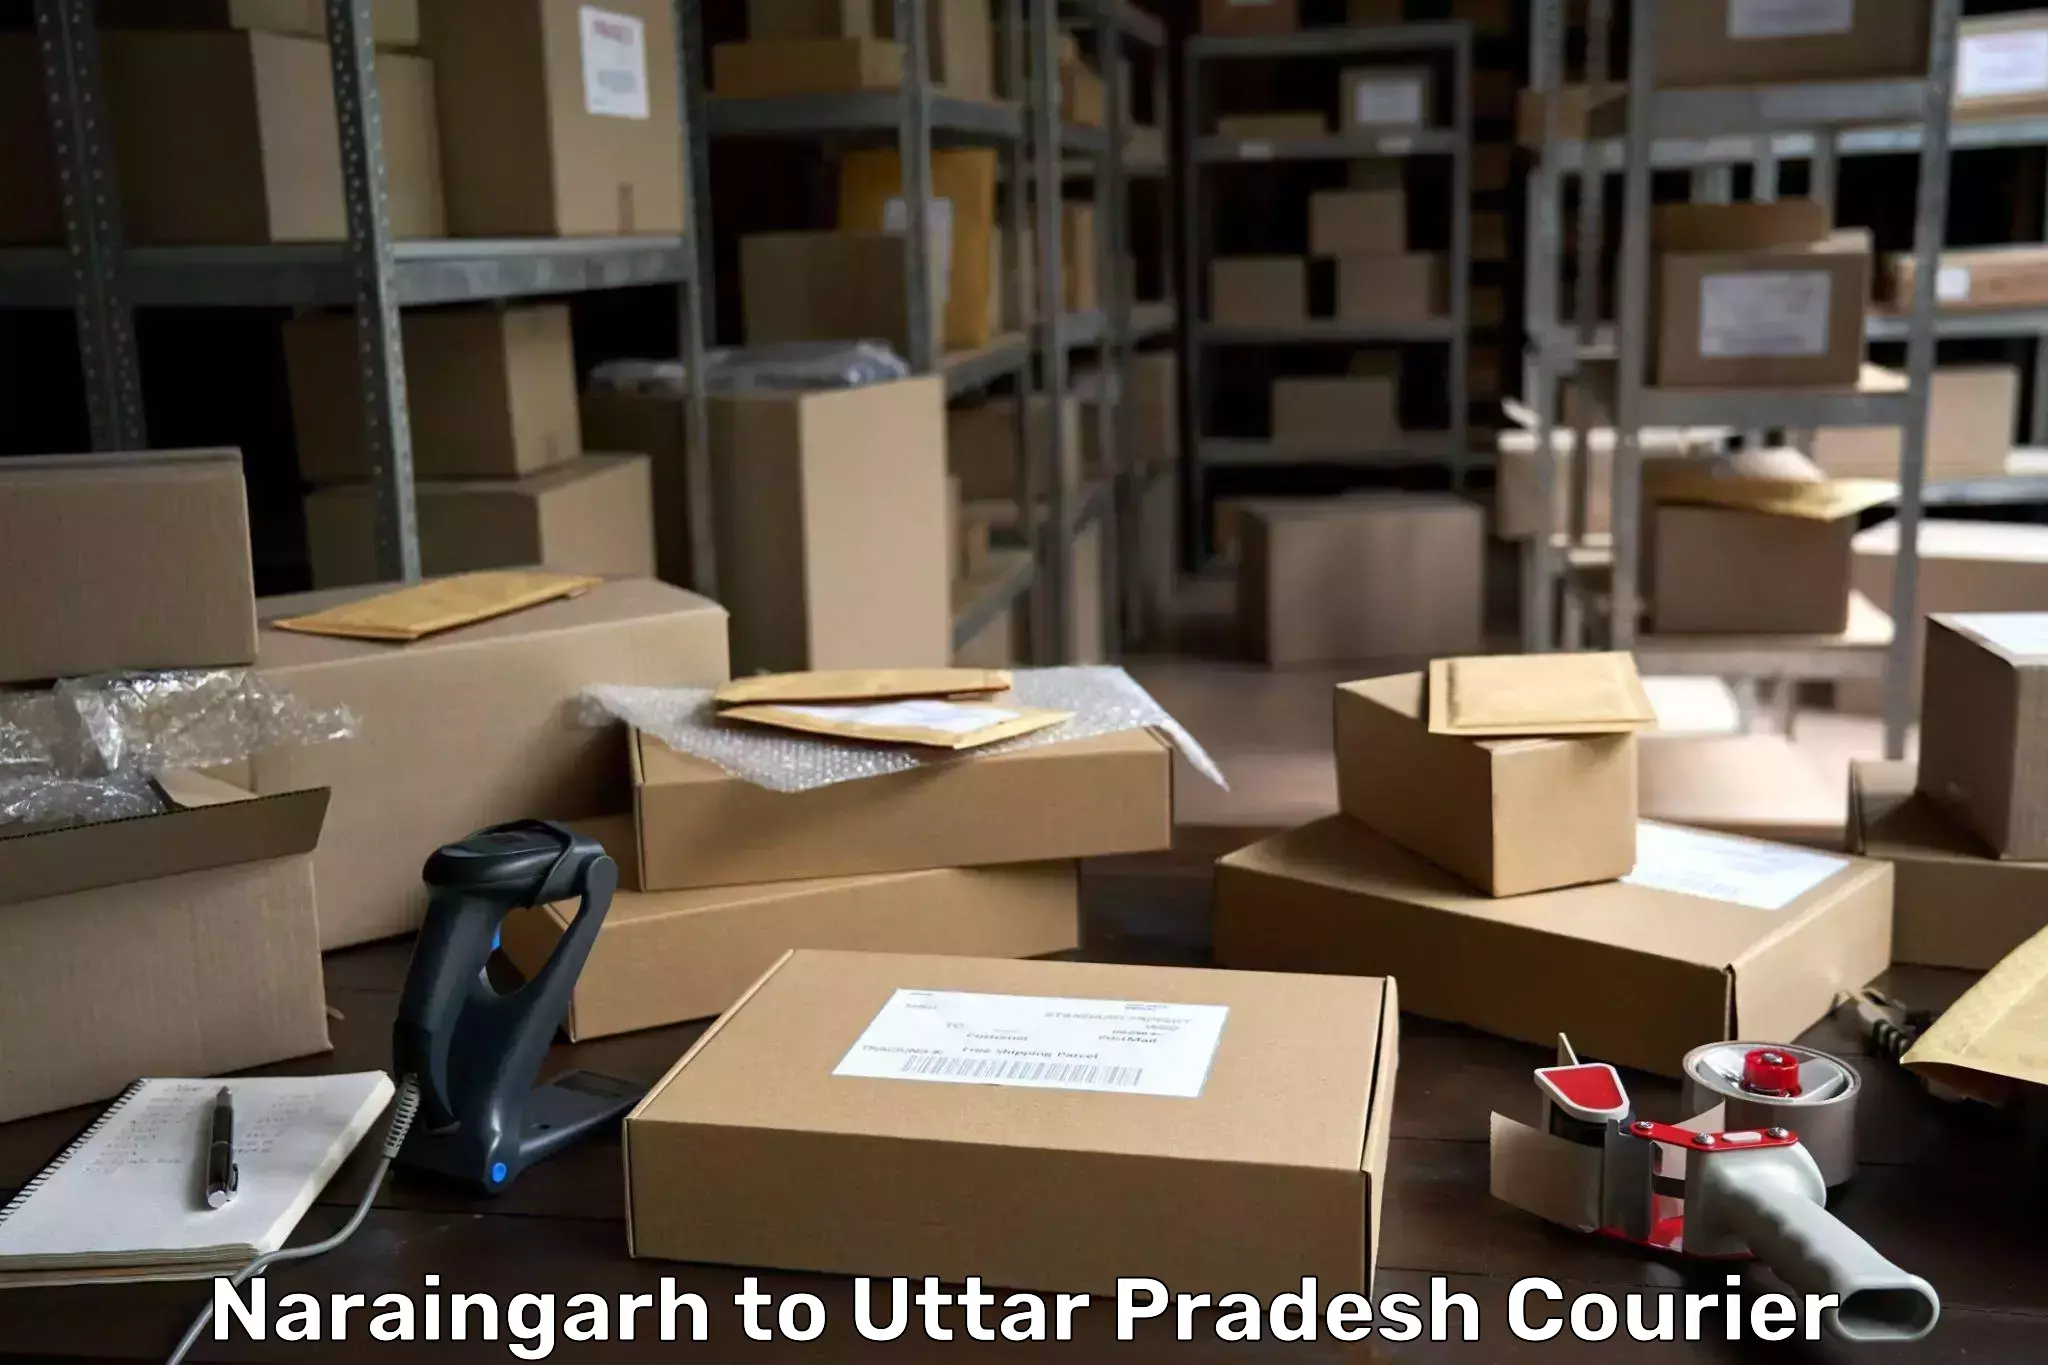 Multi-national courier services Naraingarh to Varanasi